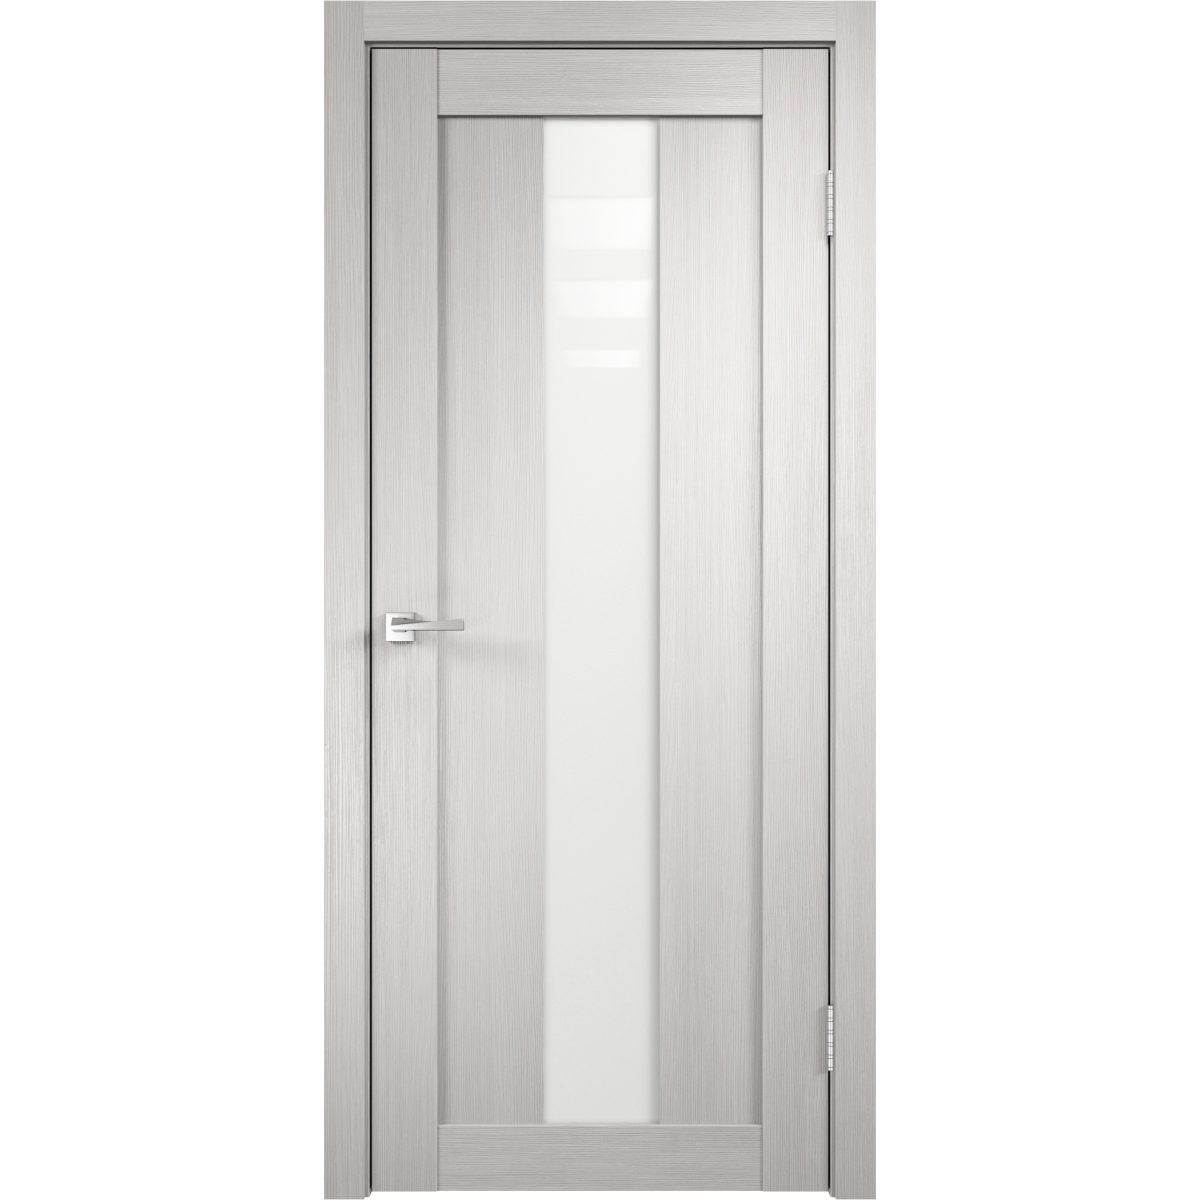 Дверь межкомнатная остеклённая Фортуна 80x200 см, ПВХ, цвет белый дуб